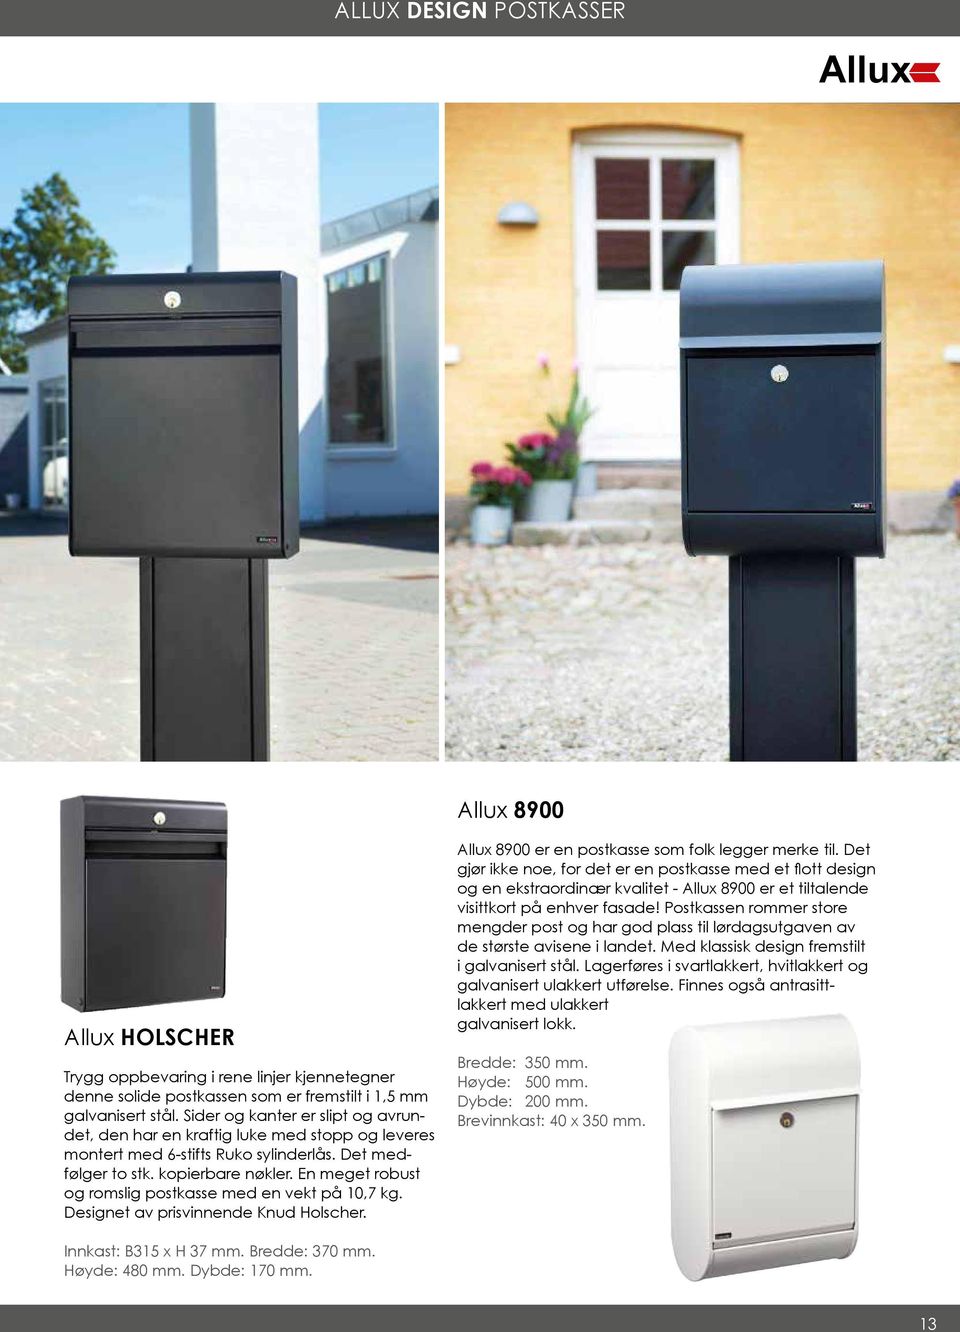 En meget robust og romslig postkasse med en vekt på 10,7 kg. Designet av prisvinnende Knud Holscher. Allux 8900 er en postkasse som folk legger merke til.